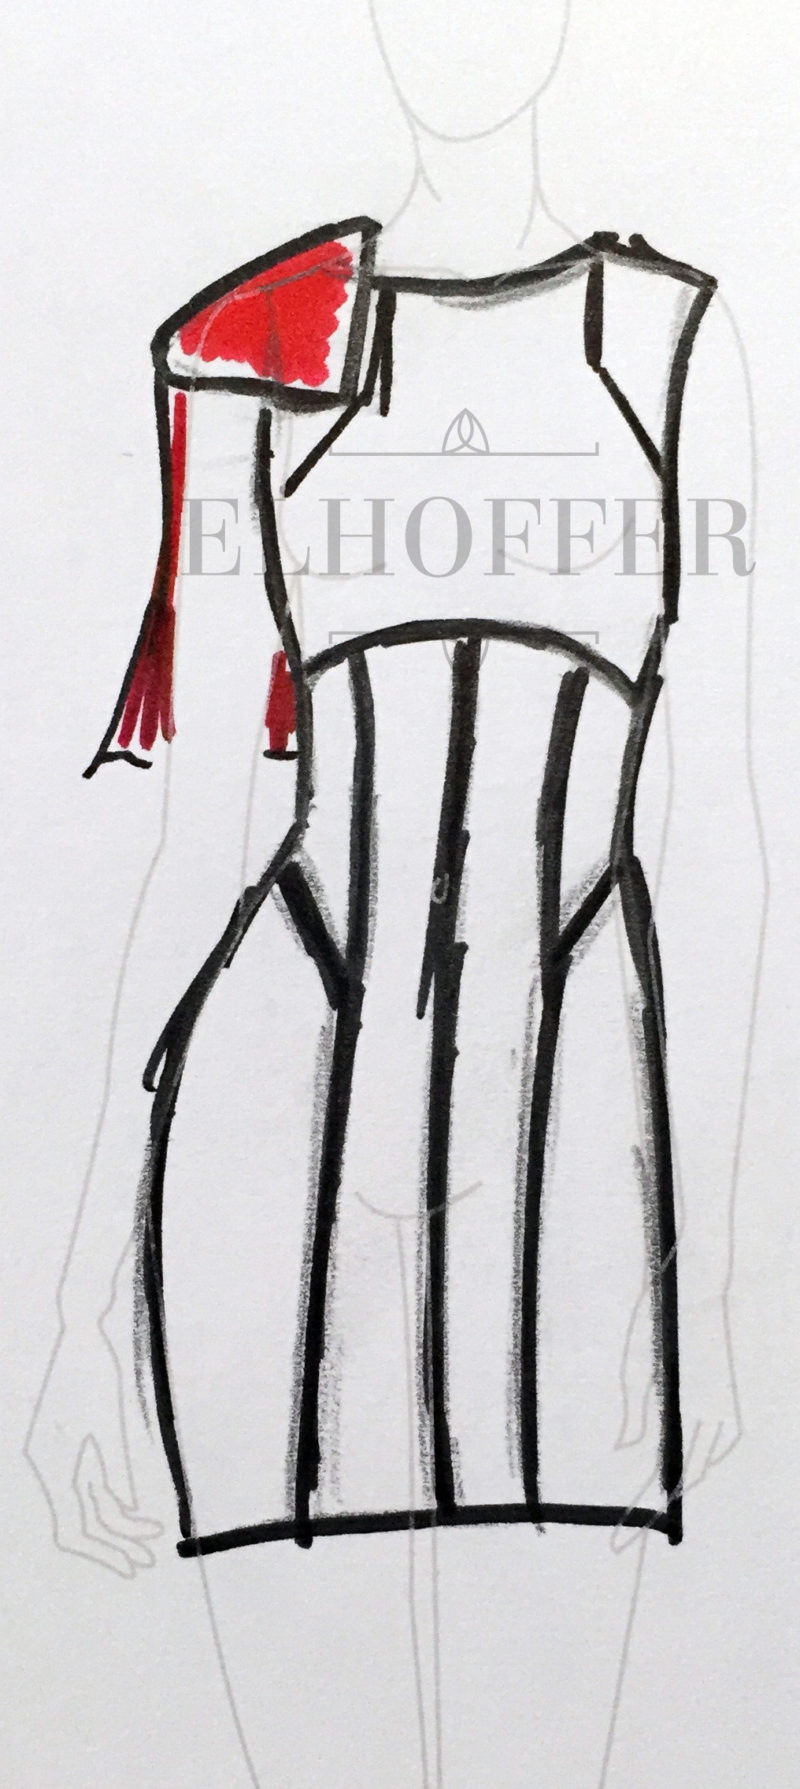 Elhoffer Design - Stormtrooper inspired dress concept sketch